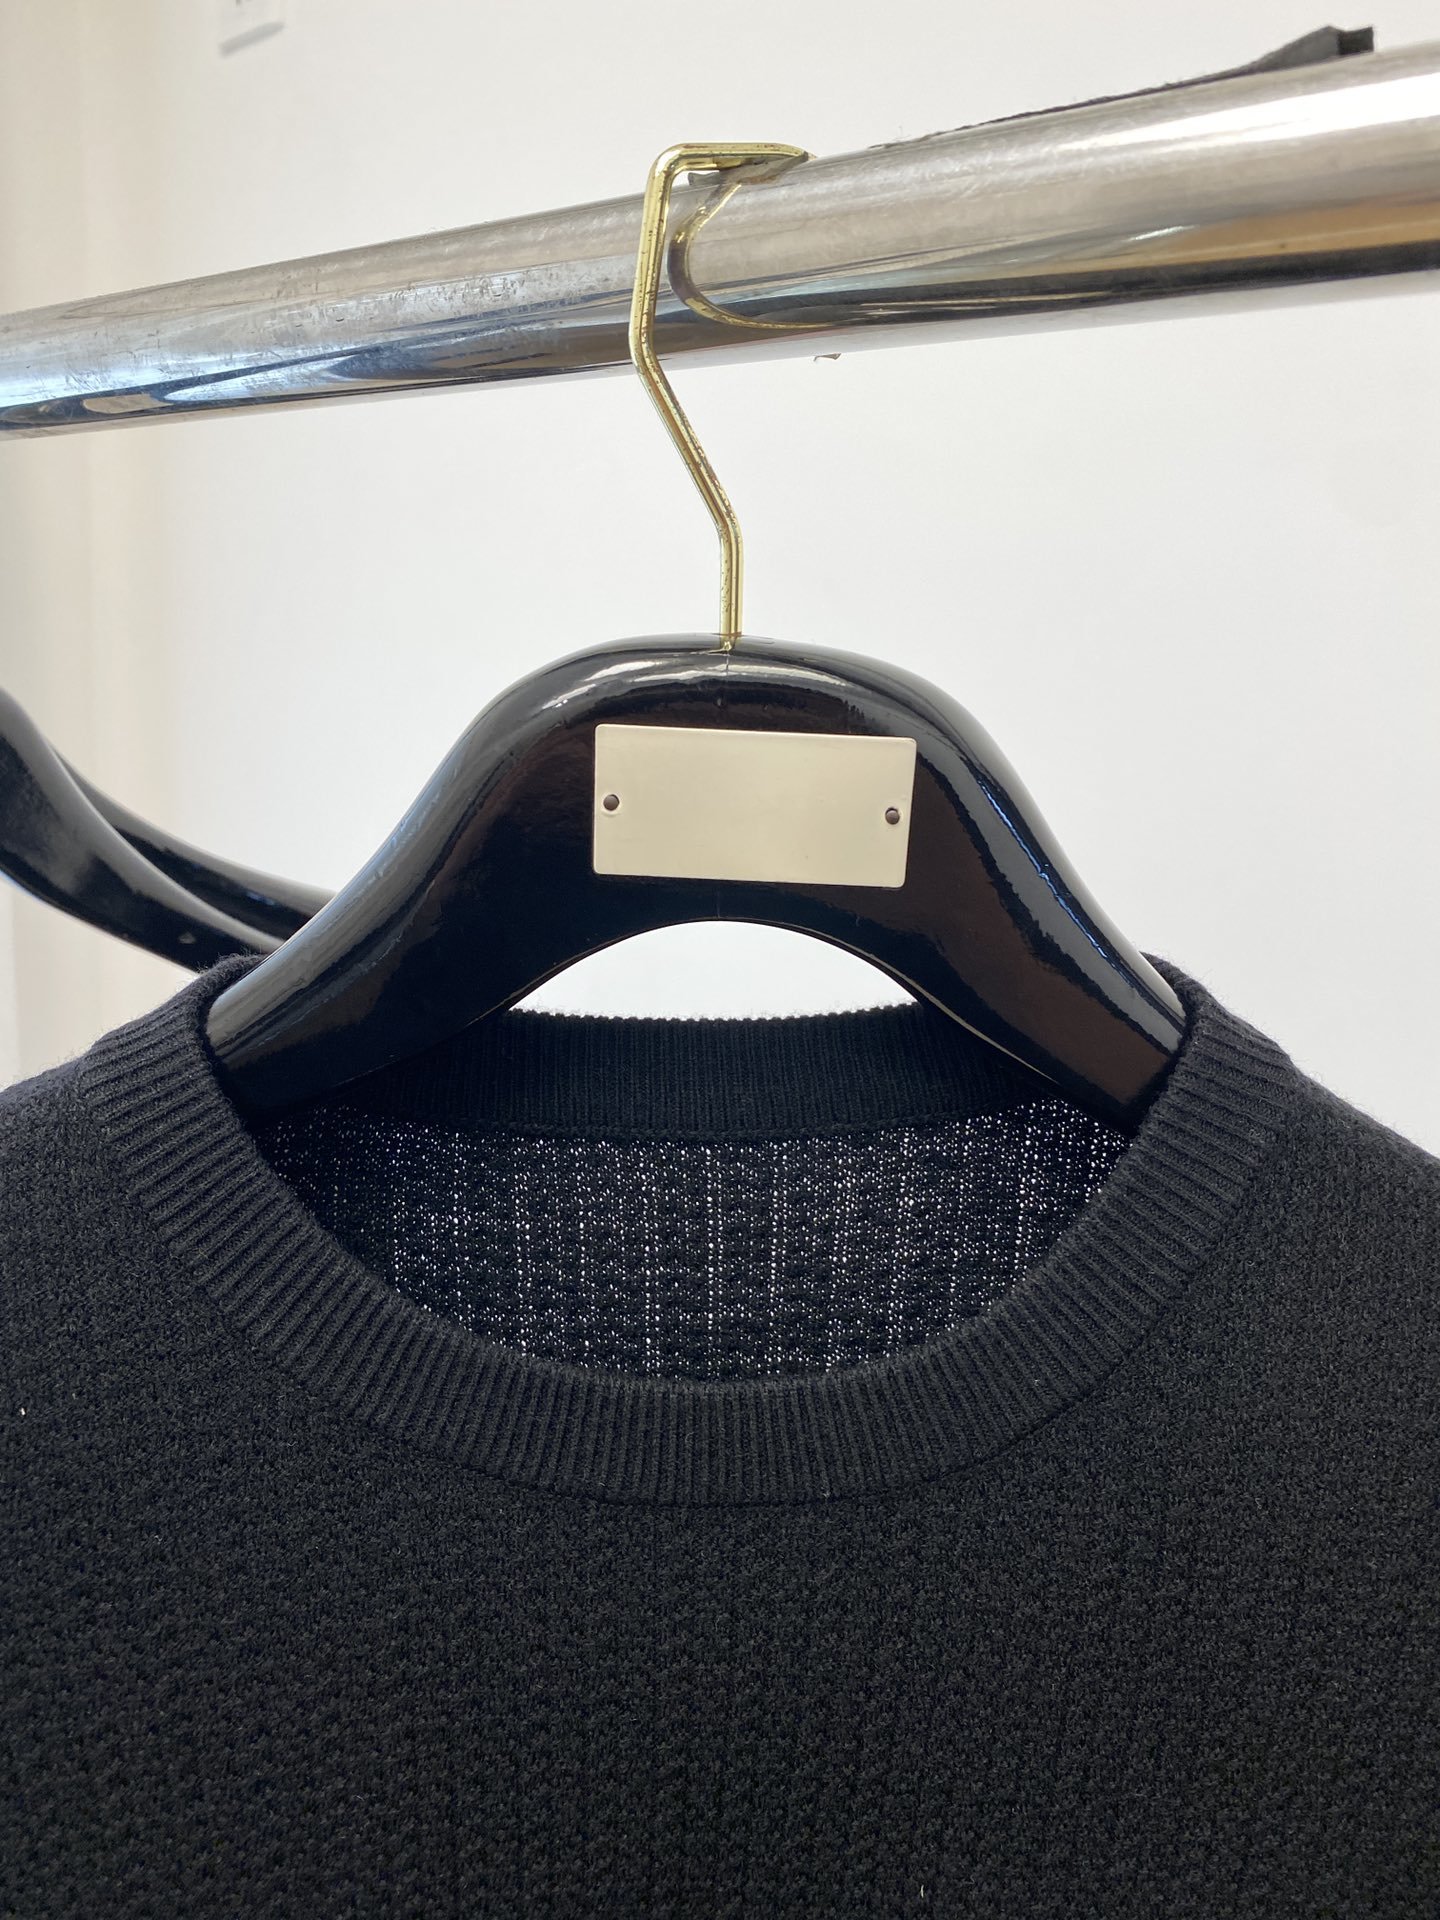 普拉达2023秋冬新品羊毛衣具有手感细腻柔软可直接与肌肤接触让暖心的纱线变化出细腻的质感顶级工艺极具特色